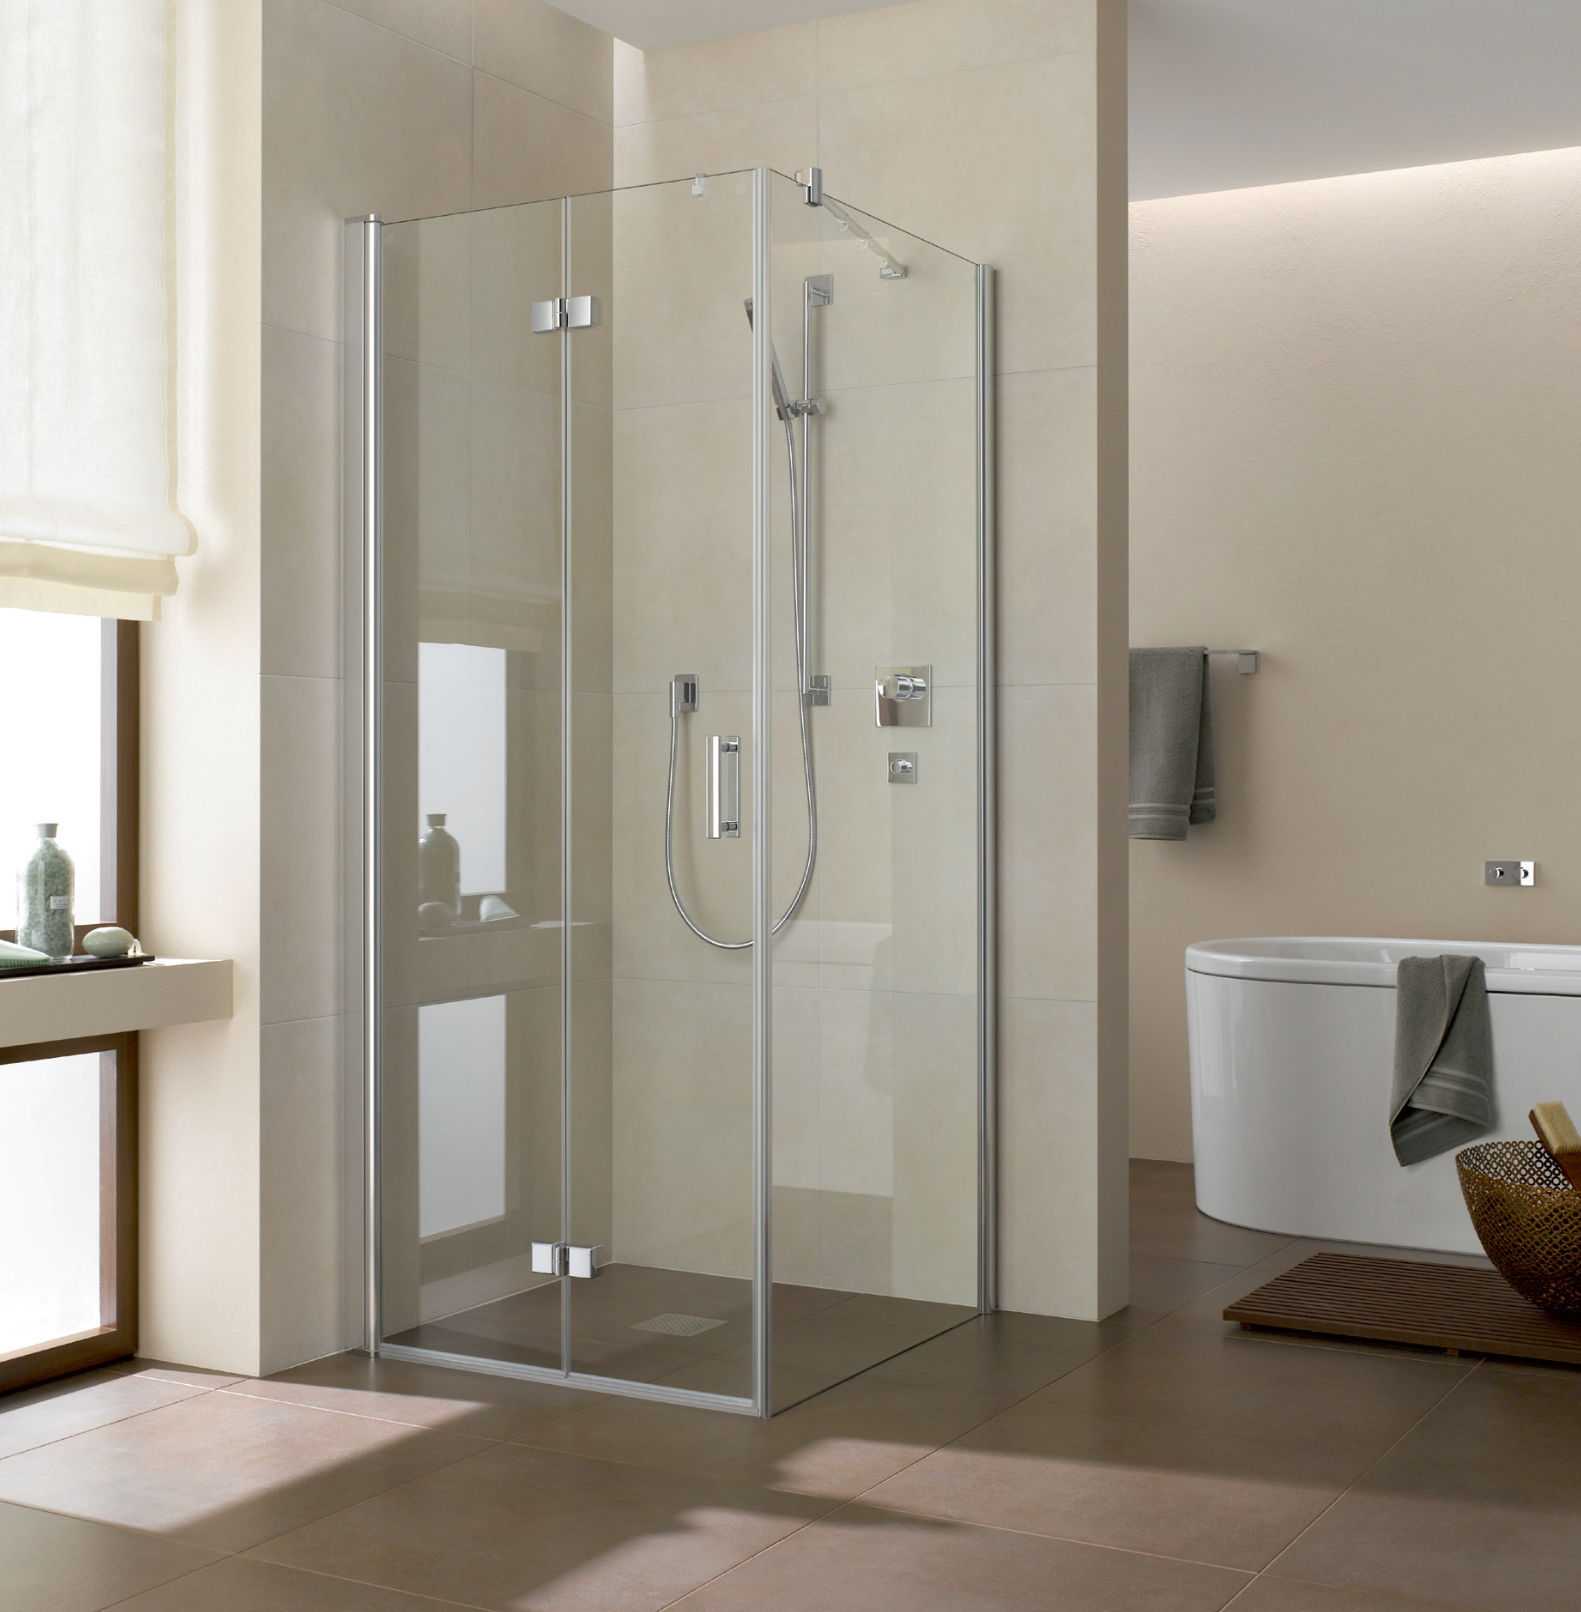 Раздвижные двери для душевой кабины: стеклянные или пластиковые двери для душа размерами 170 см и 130 см. как выбрать перегородки в ванную комнату?